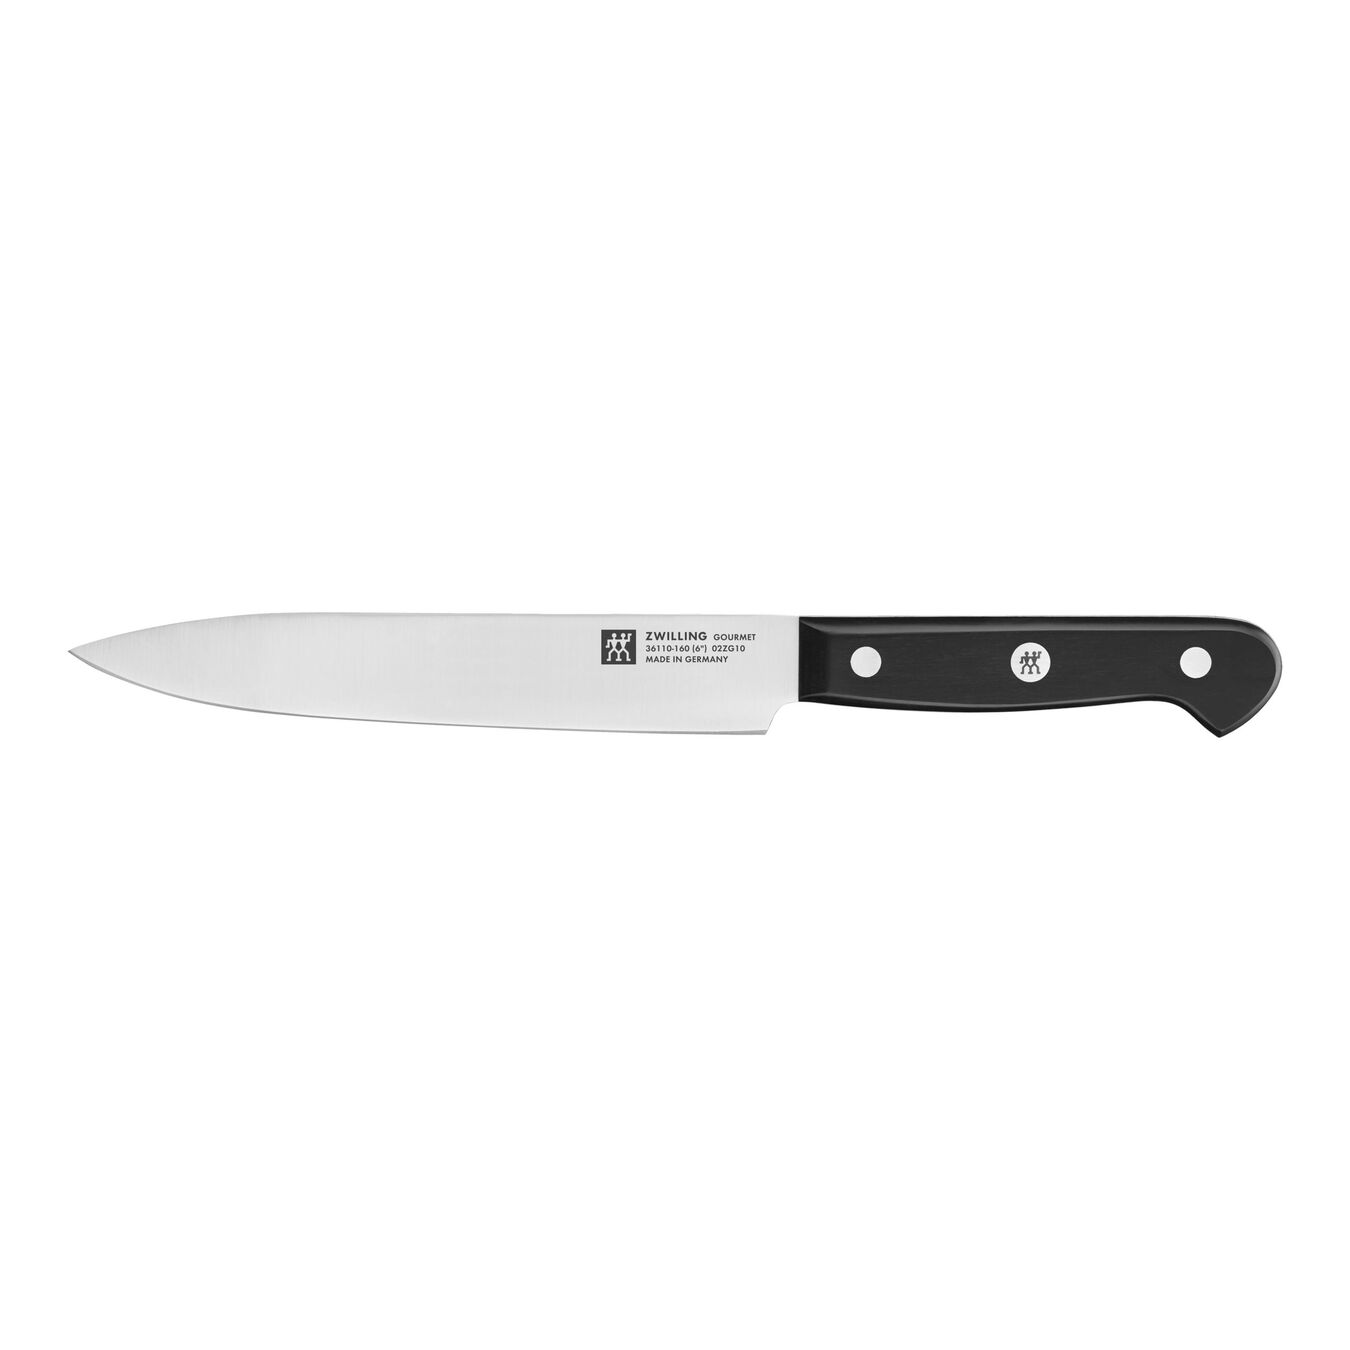 Taco de cuchillos con sistema de autoafilado 7-pzs, Marrón,,large 10